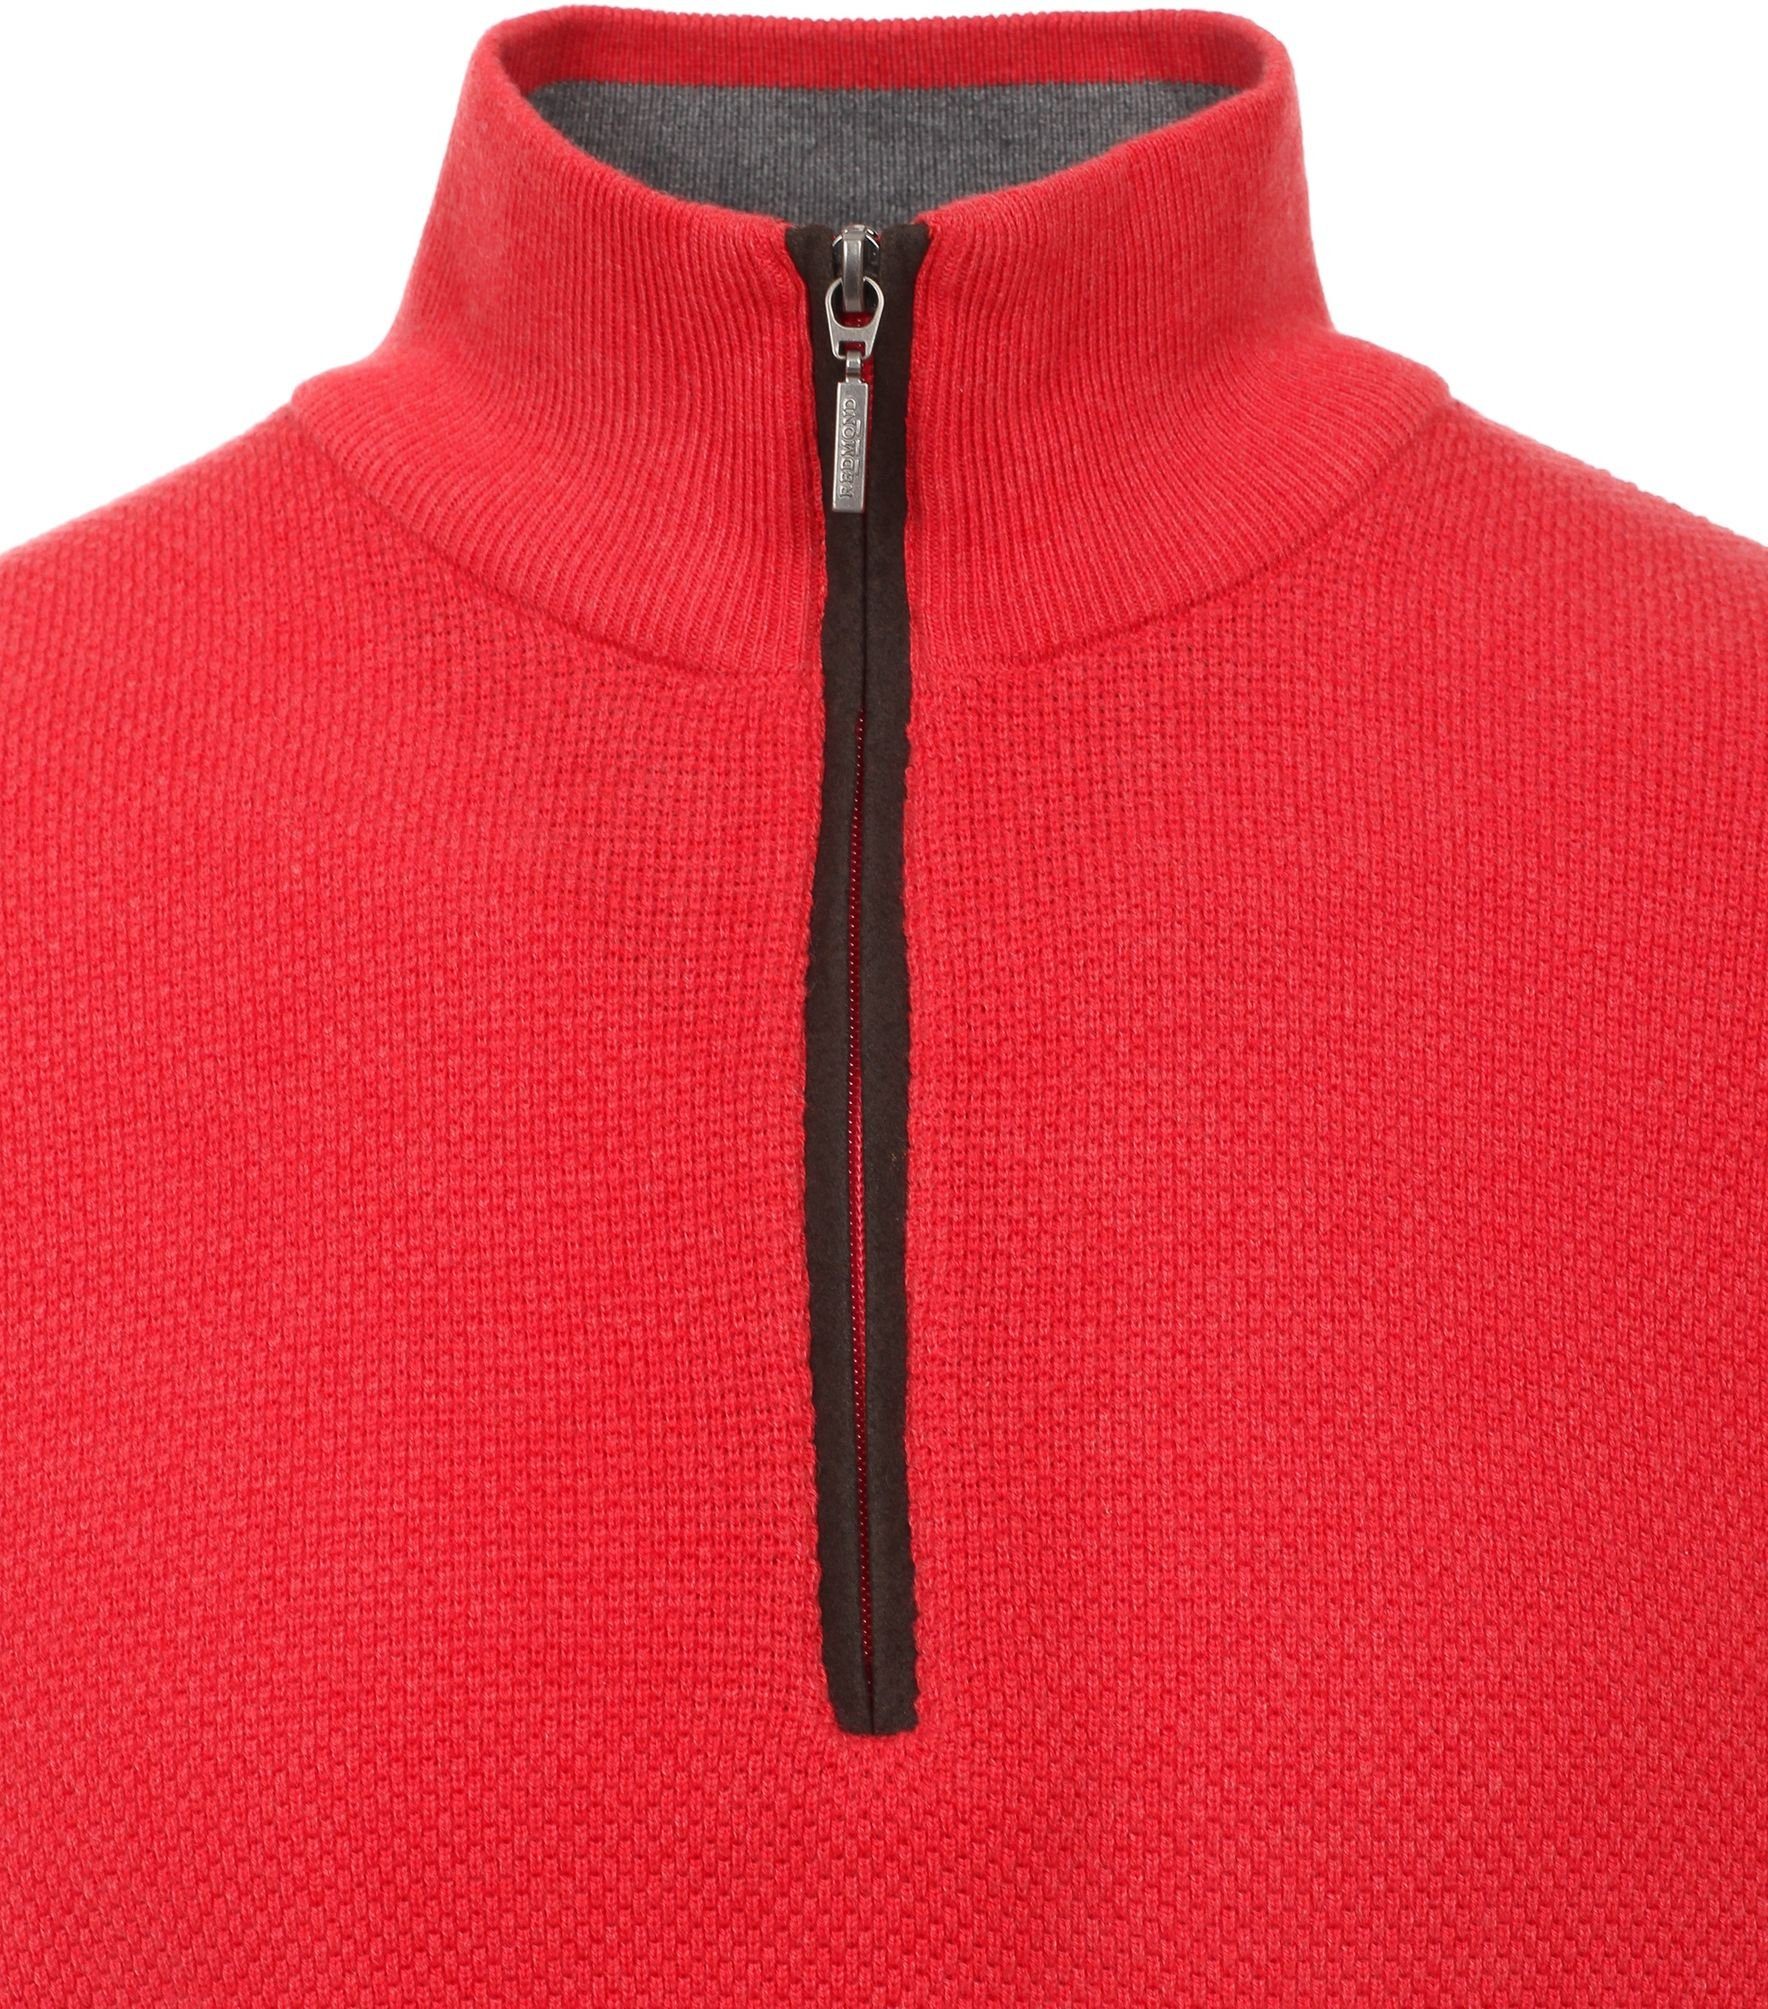 Reißverschluss (513) Rot Redmond Troyer Sweatshirt